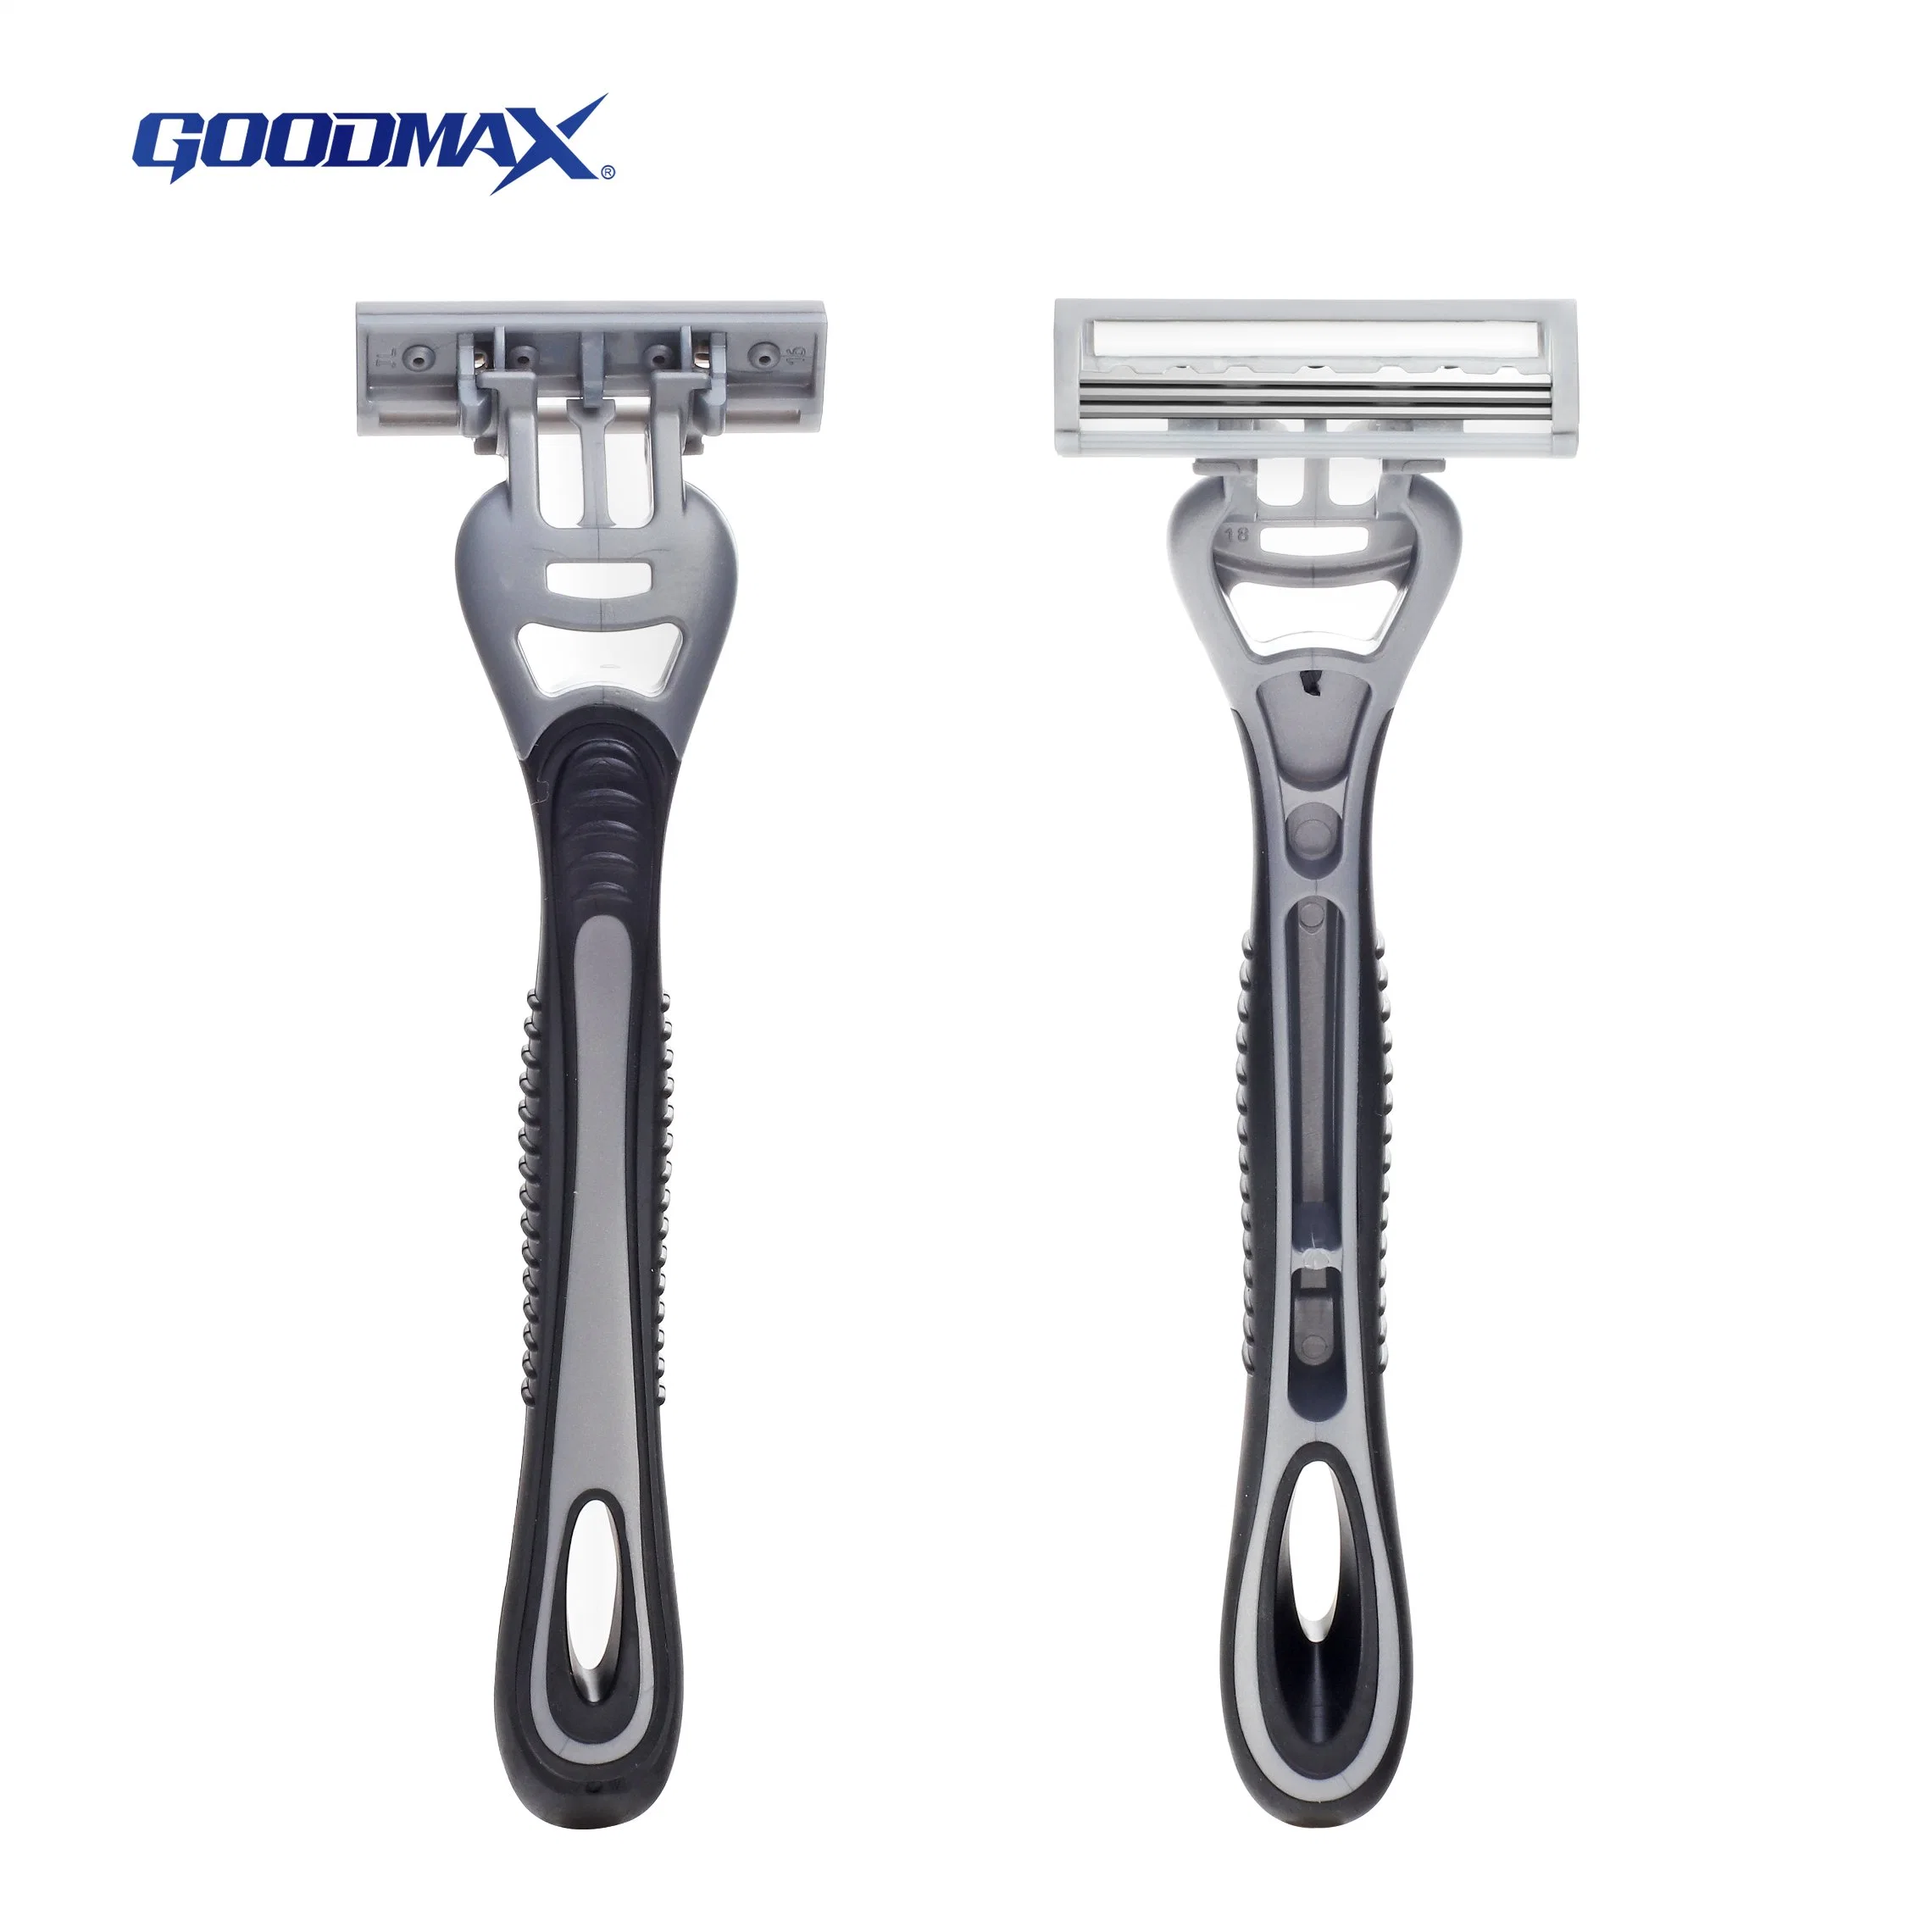 Cabezal suave pivotante 3 cuchillas afeitadora afeitadora de afeitado desechable Goodmax SL-3100t